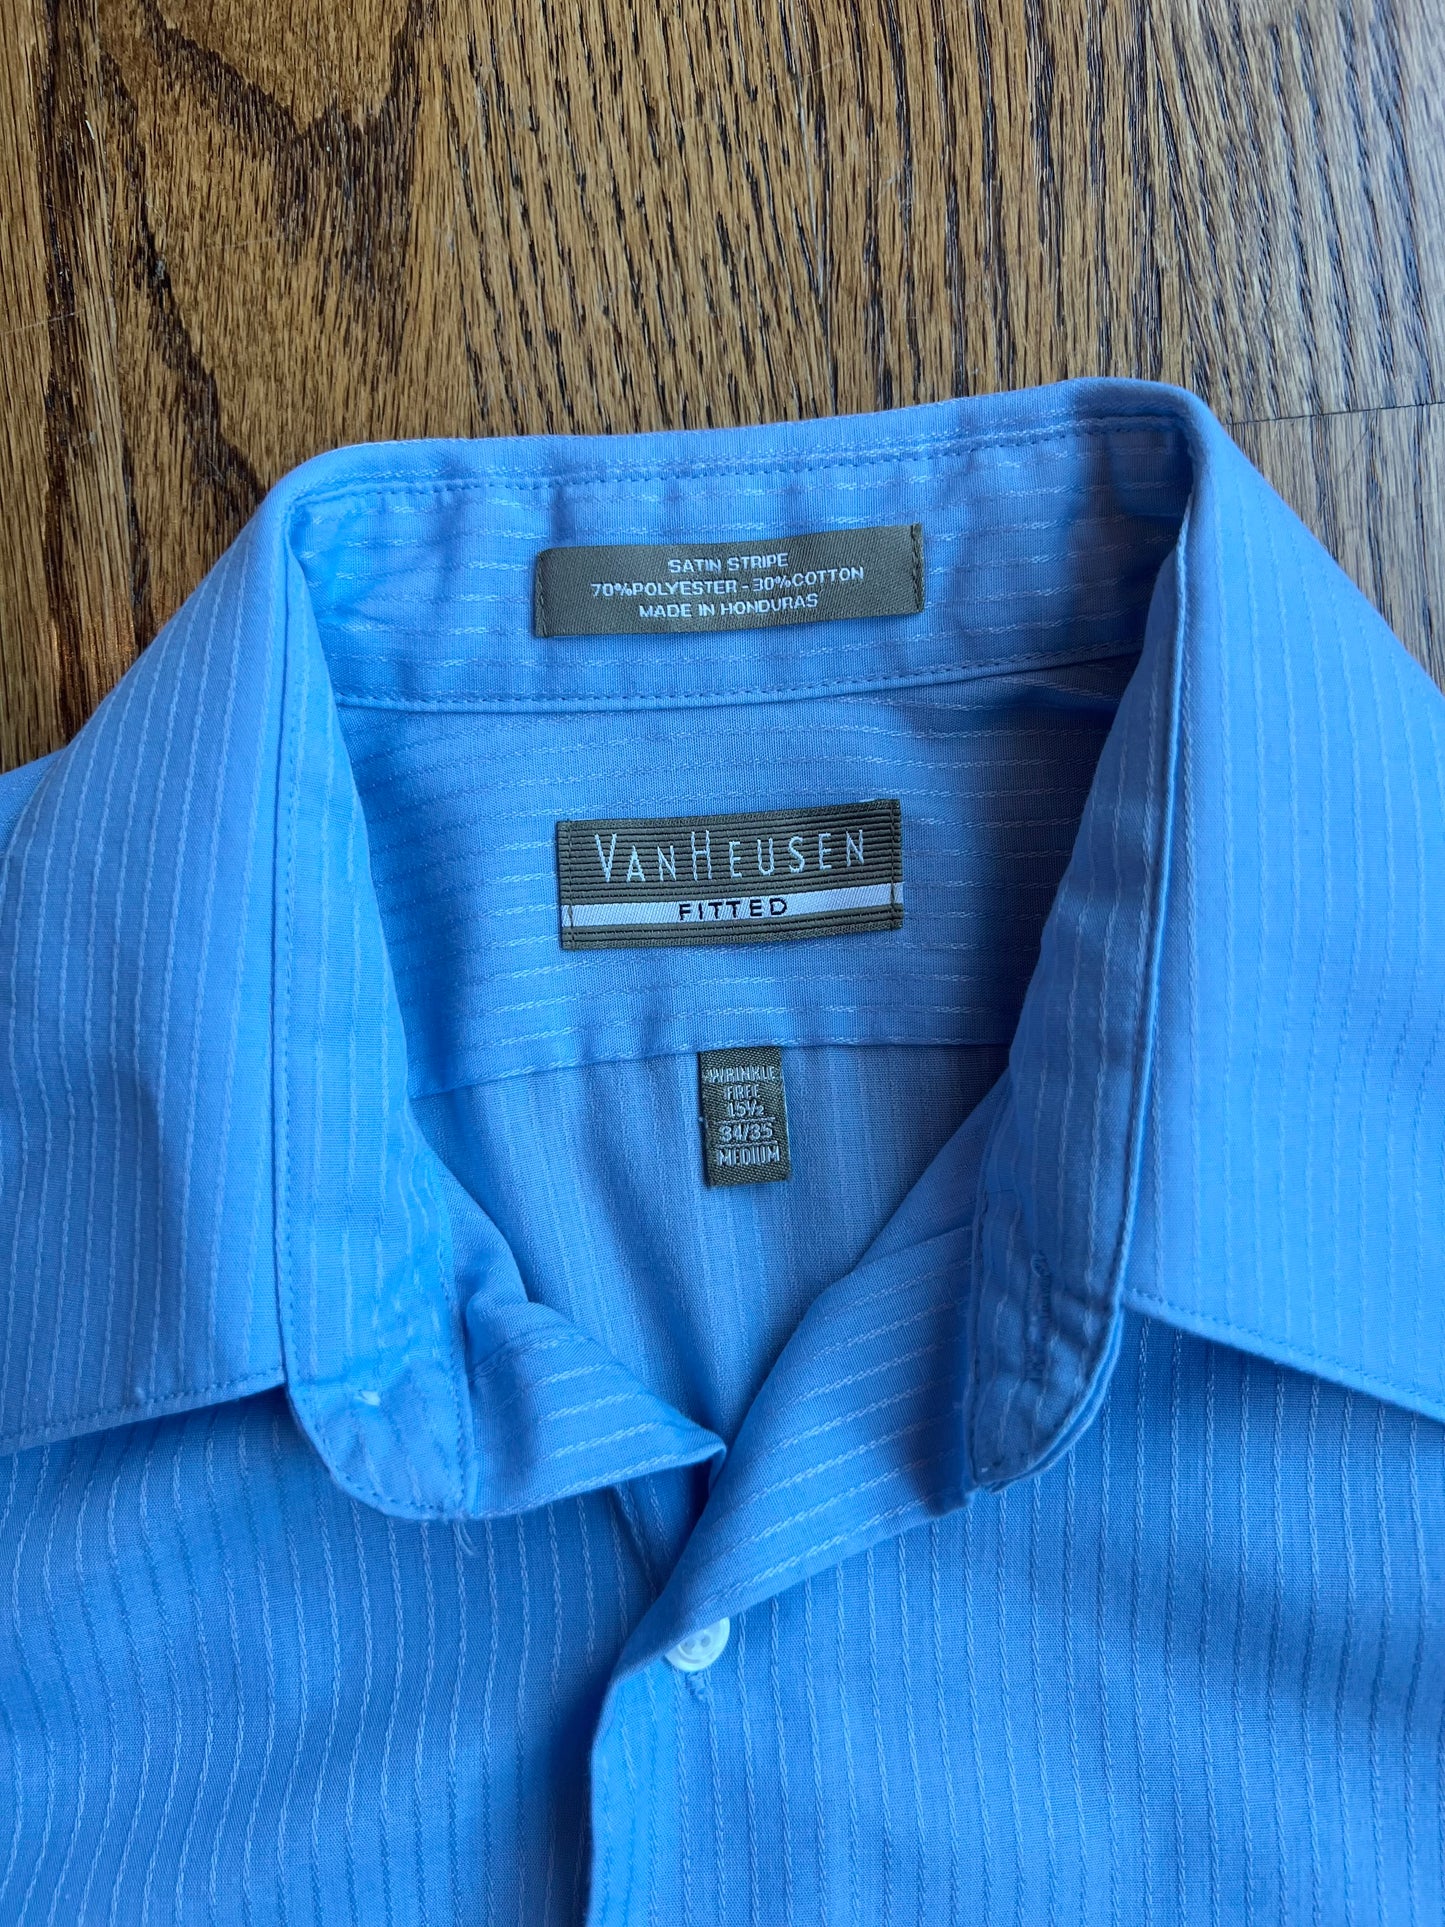 Van Heusen Men's Size Medium (15.5" Neck, 34/35" Sleeve) Blue Dress Shirt, EUC